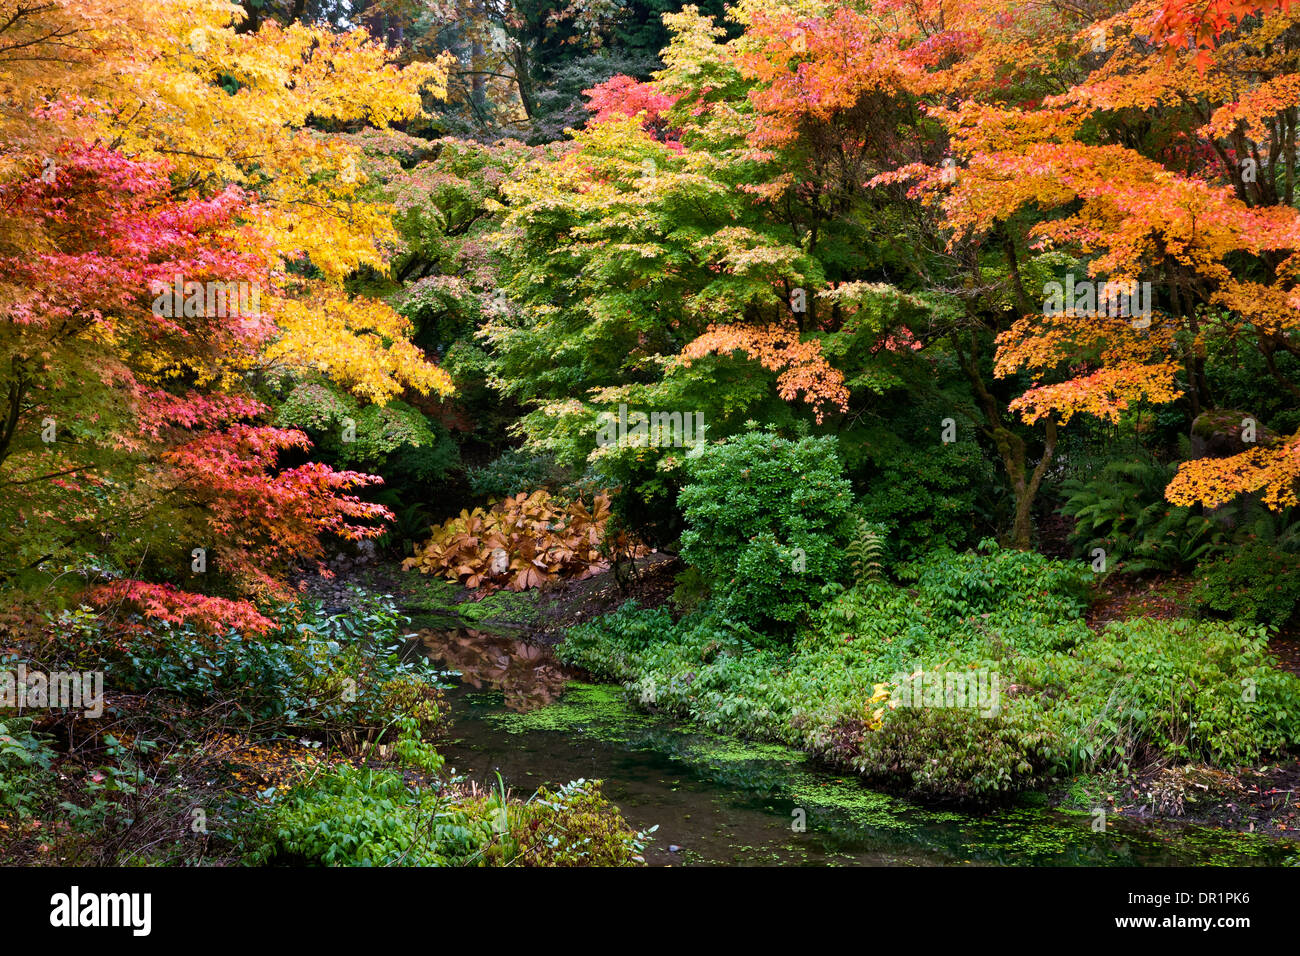 WASHINGTON - Herbstfarben im Abschnitt Yao Garten von Bellevue Botanical Garden. Stockfoto